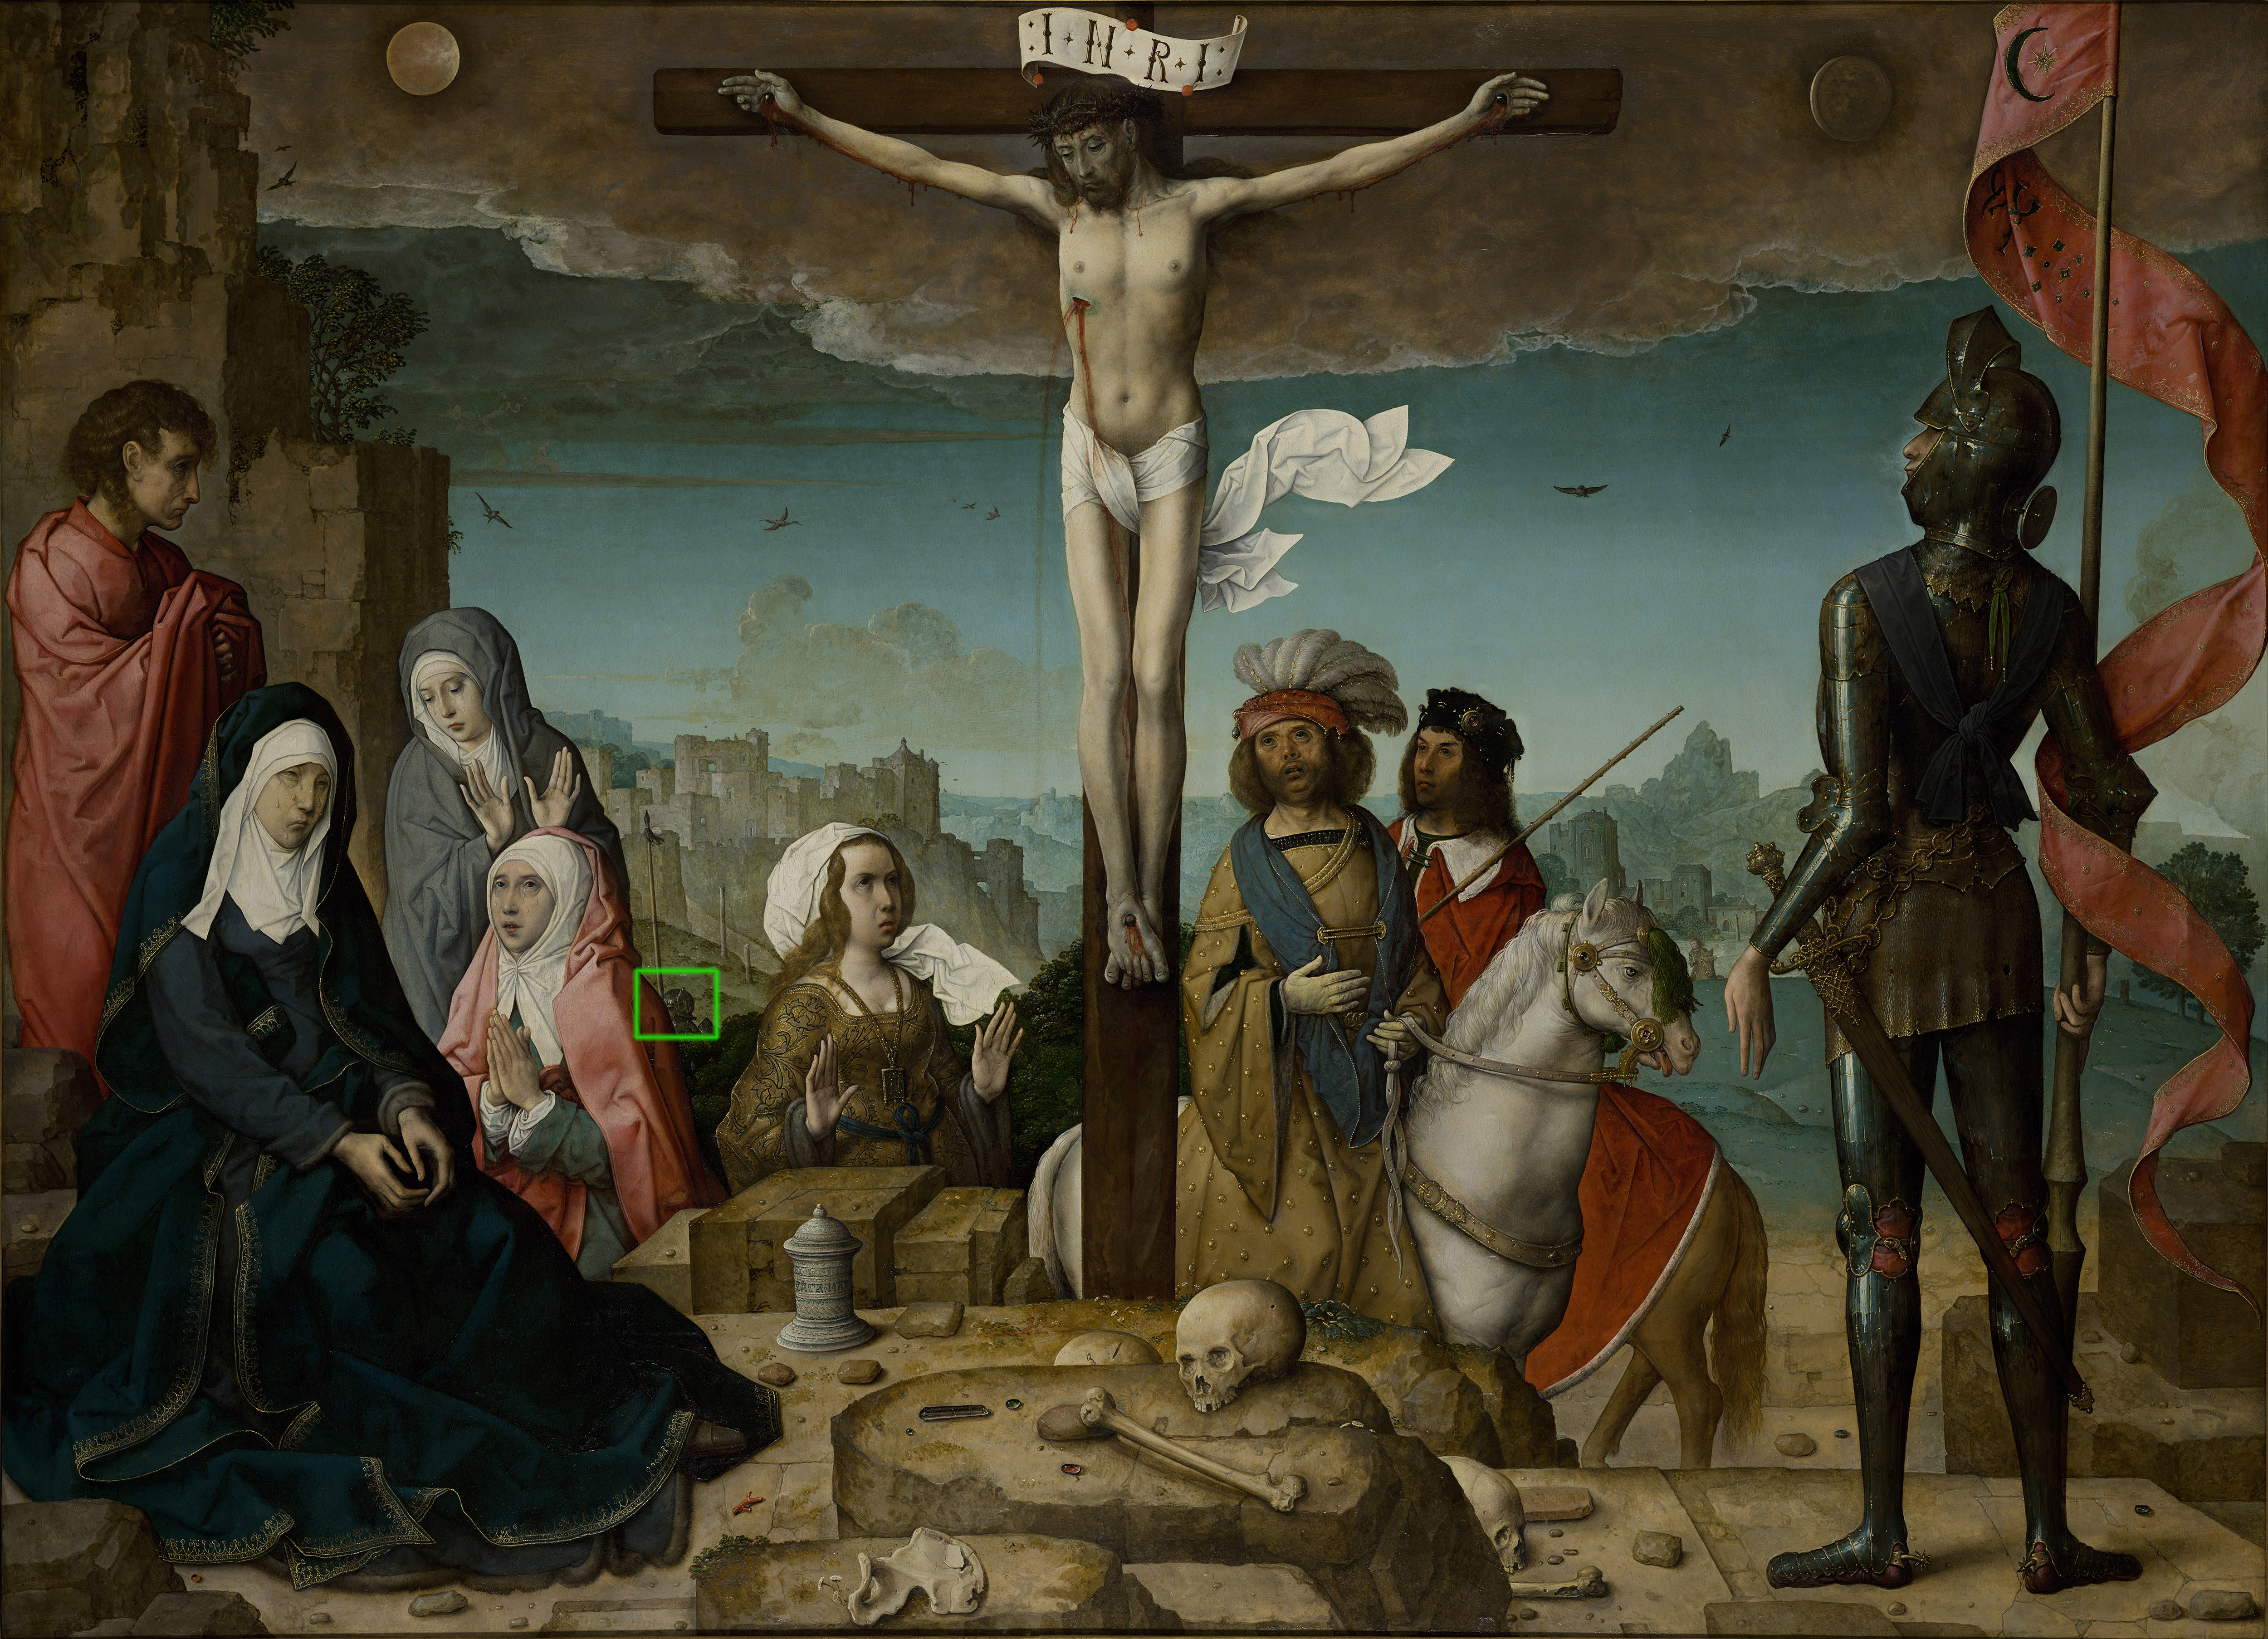 Христианство в искусстве. Хуан де Фландес - Распятие. Распятие Фландес Иоанн де. Джотто Распятие Христа. Хуан Фландес картины.